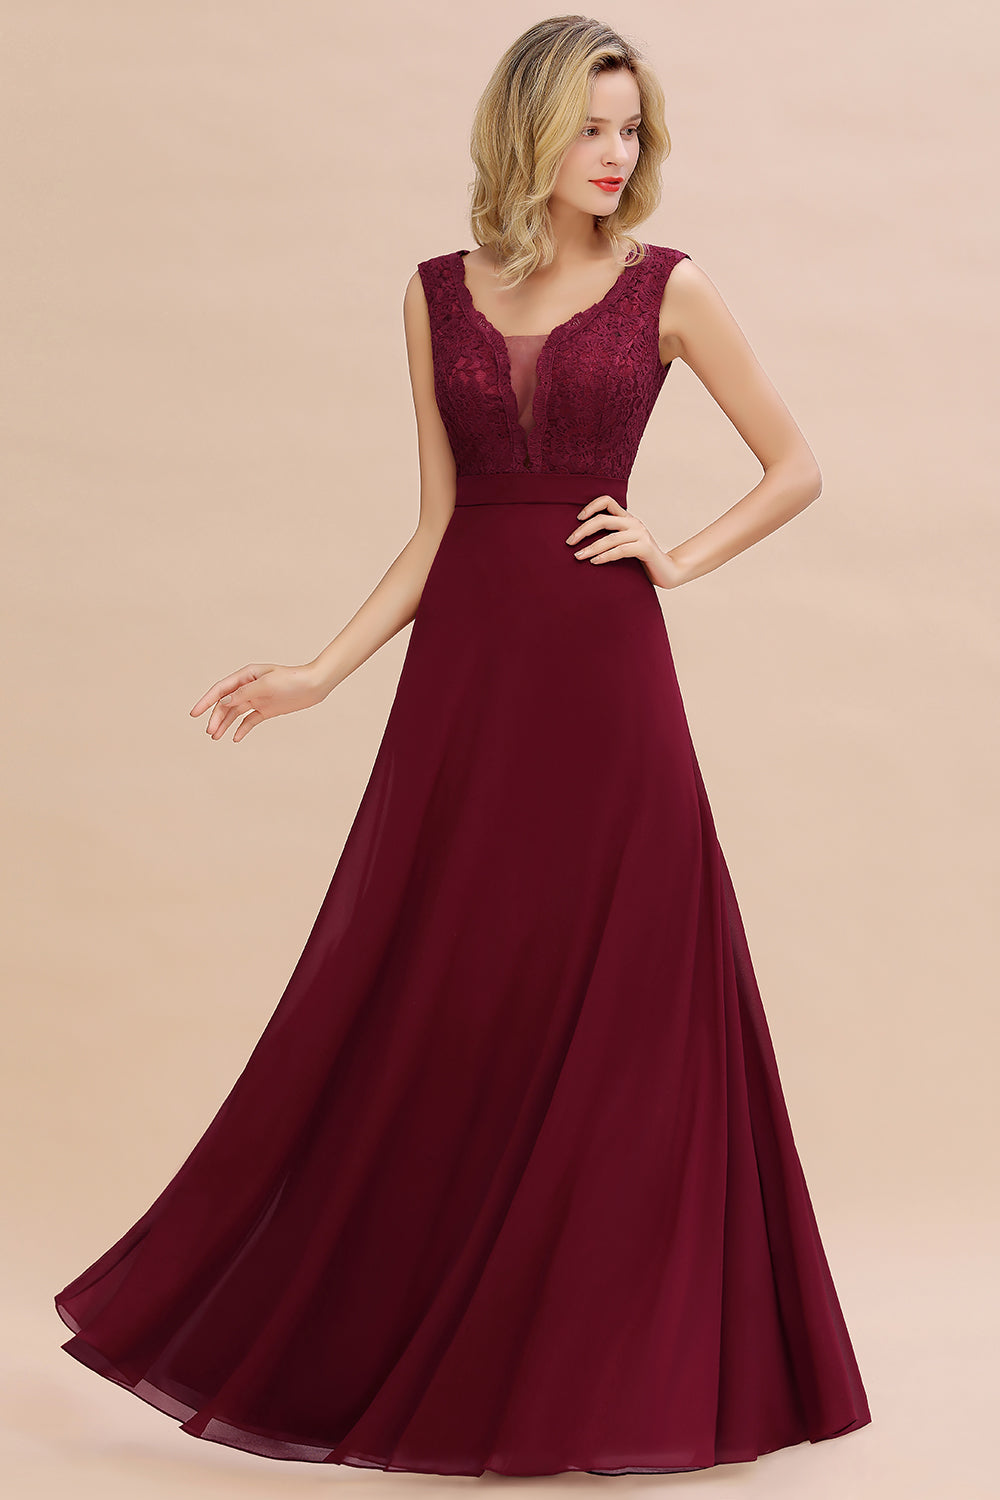 Elegant Lace Deep V-Neck Burgundy Bridesmaid Dress Affordable-27dress